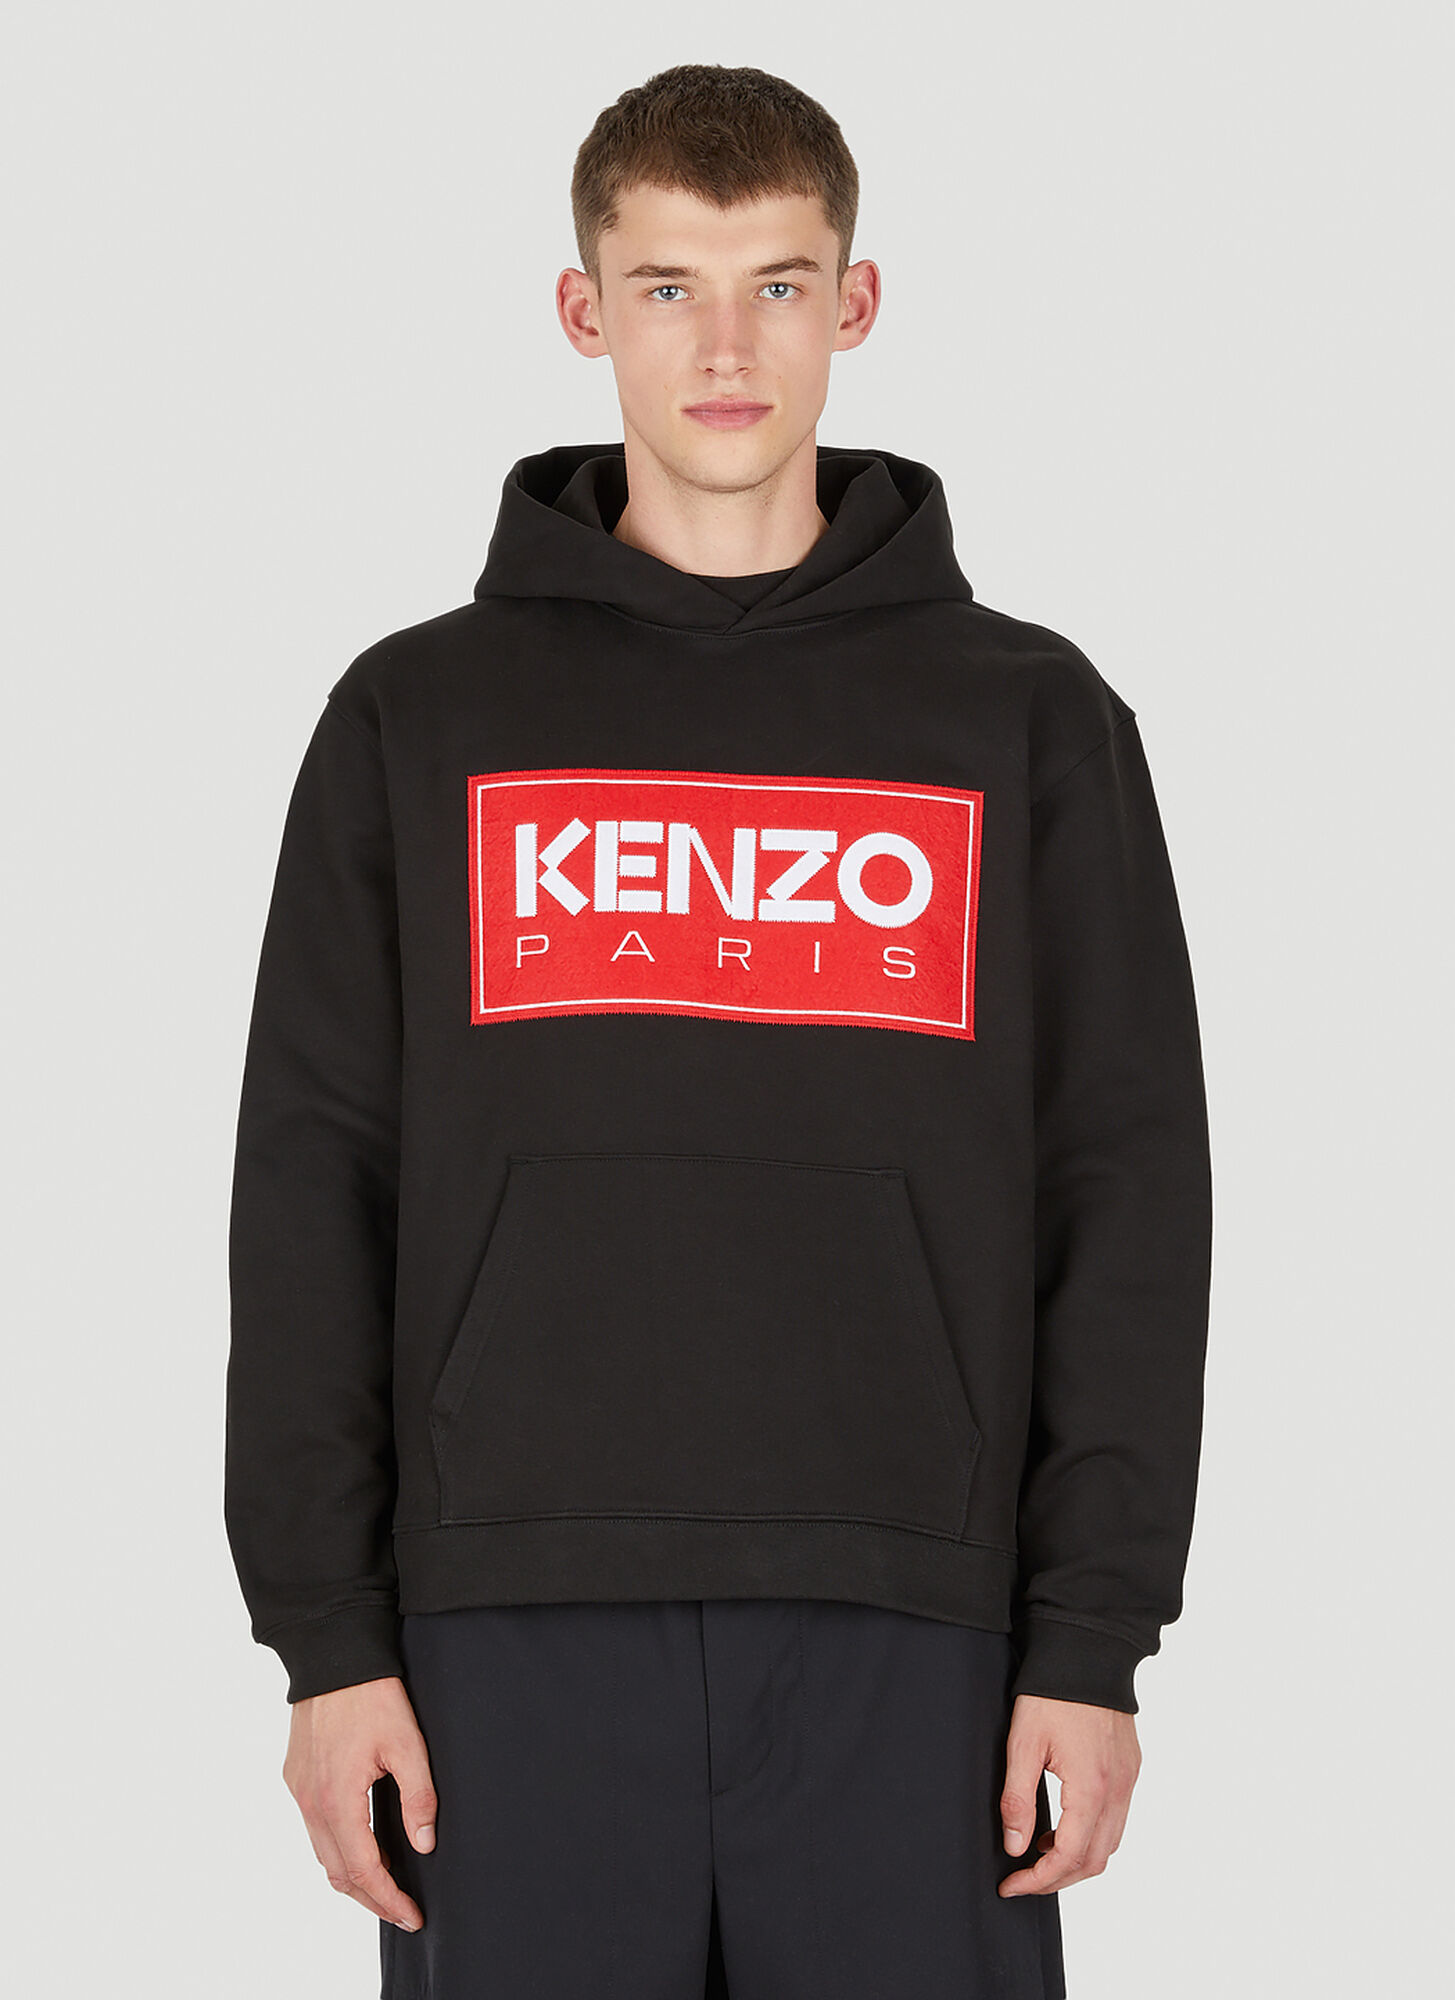 Kenzo Logo Patch Hooded Sweatshirt Male Black